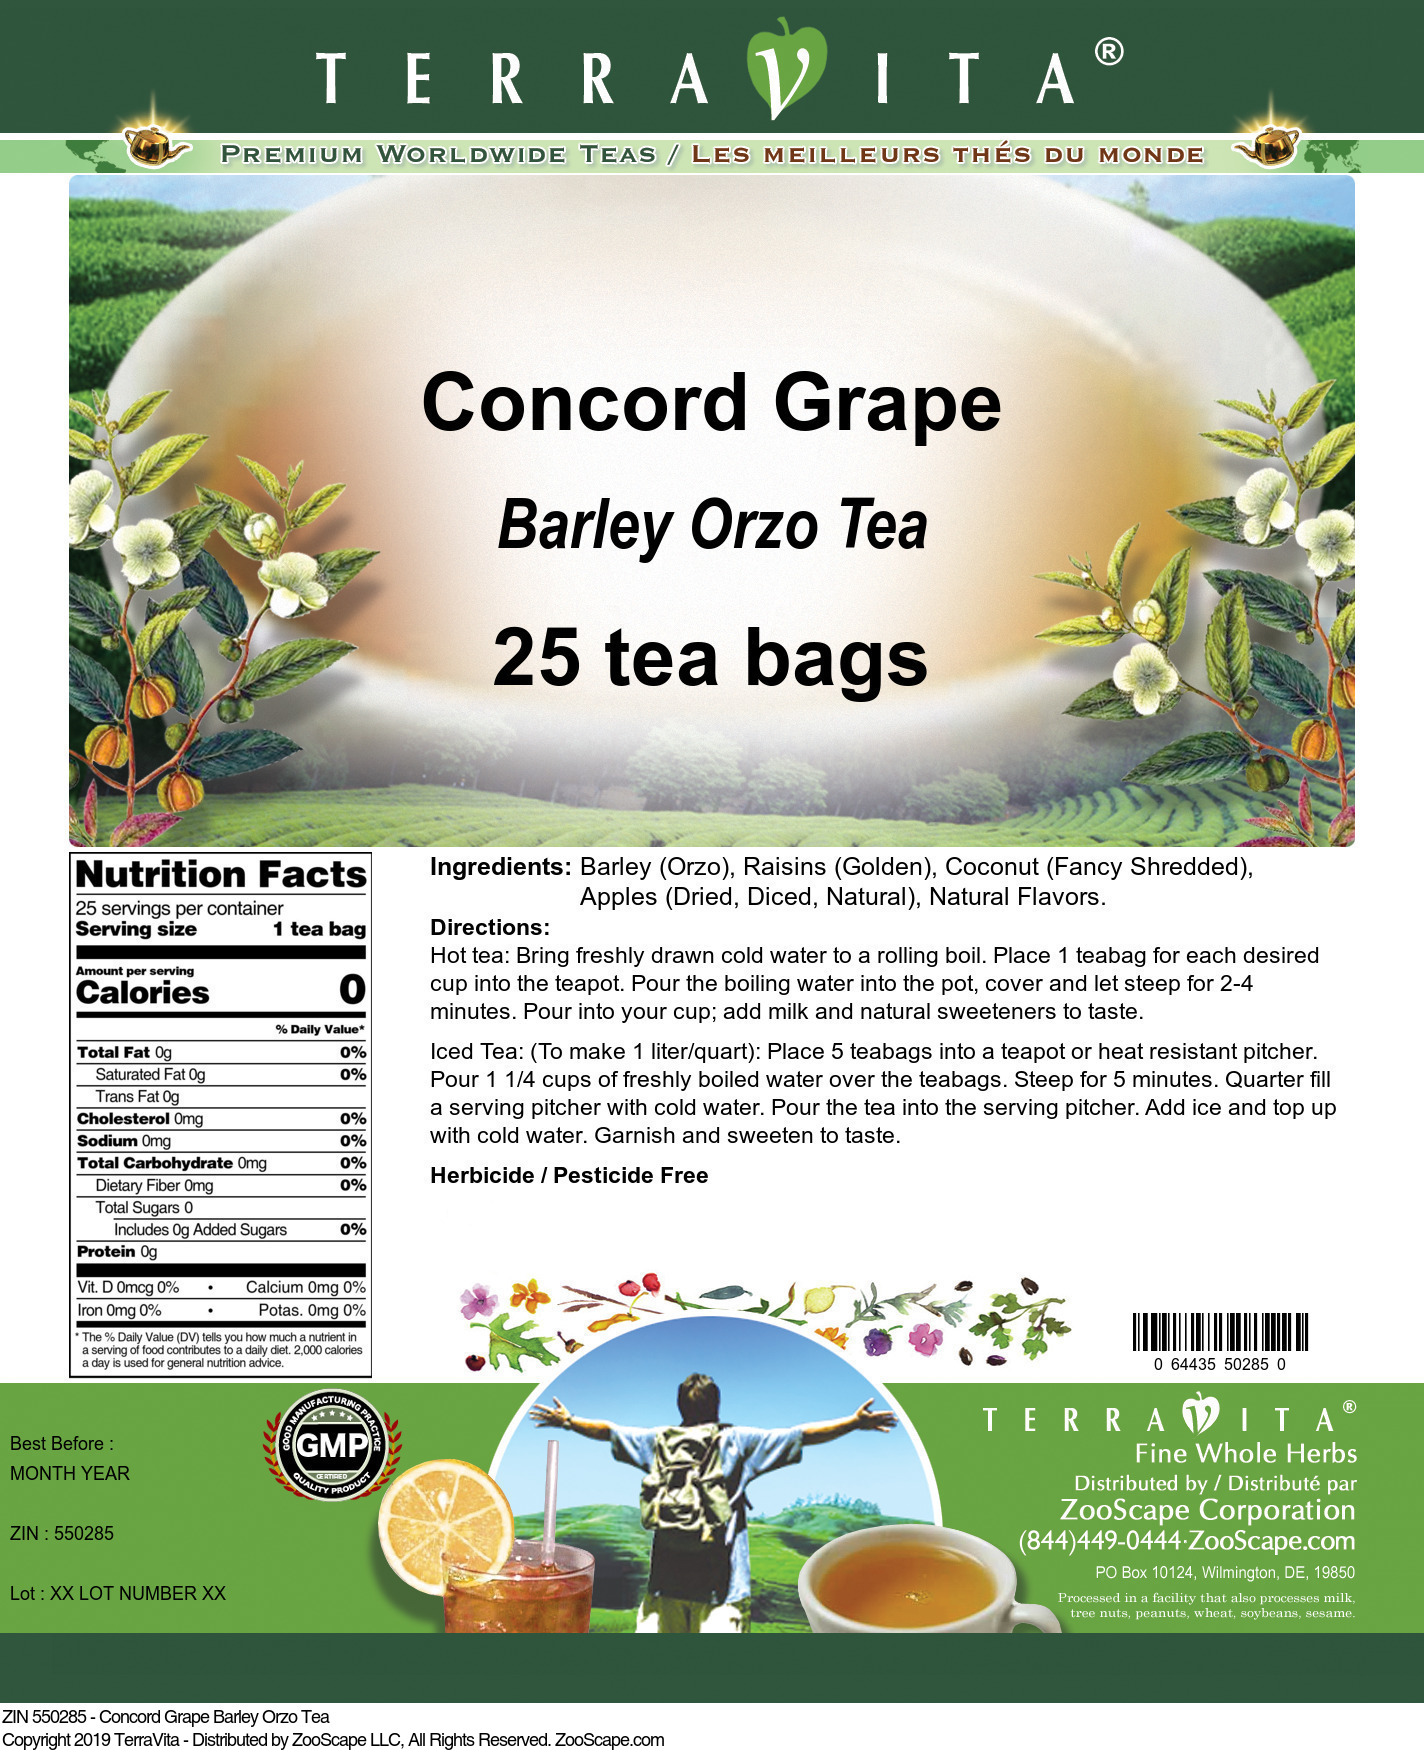 Concord Grape Barley Orzo Tea - Label